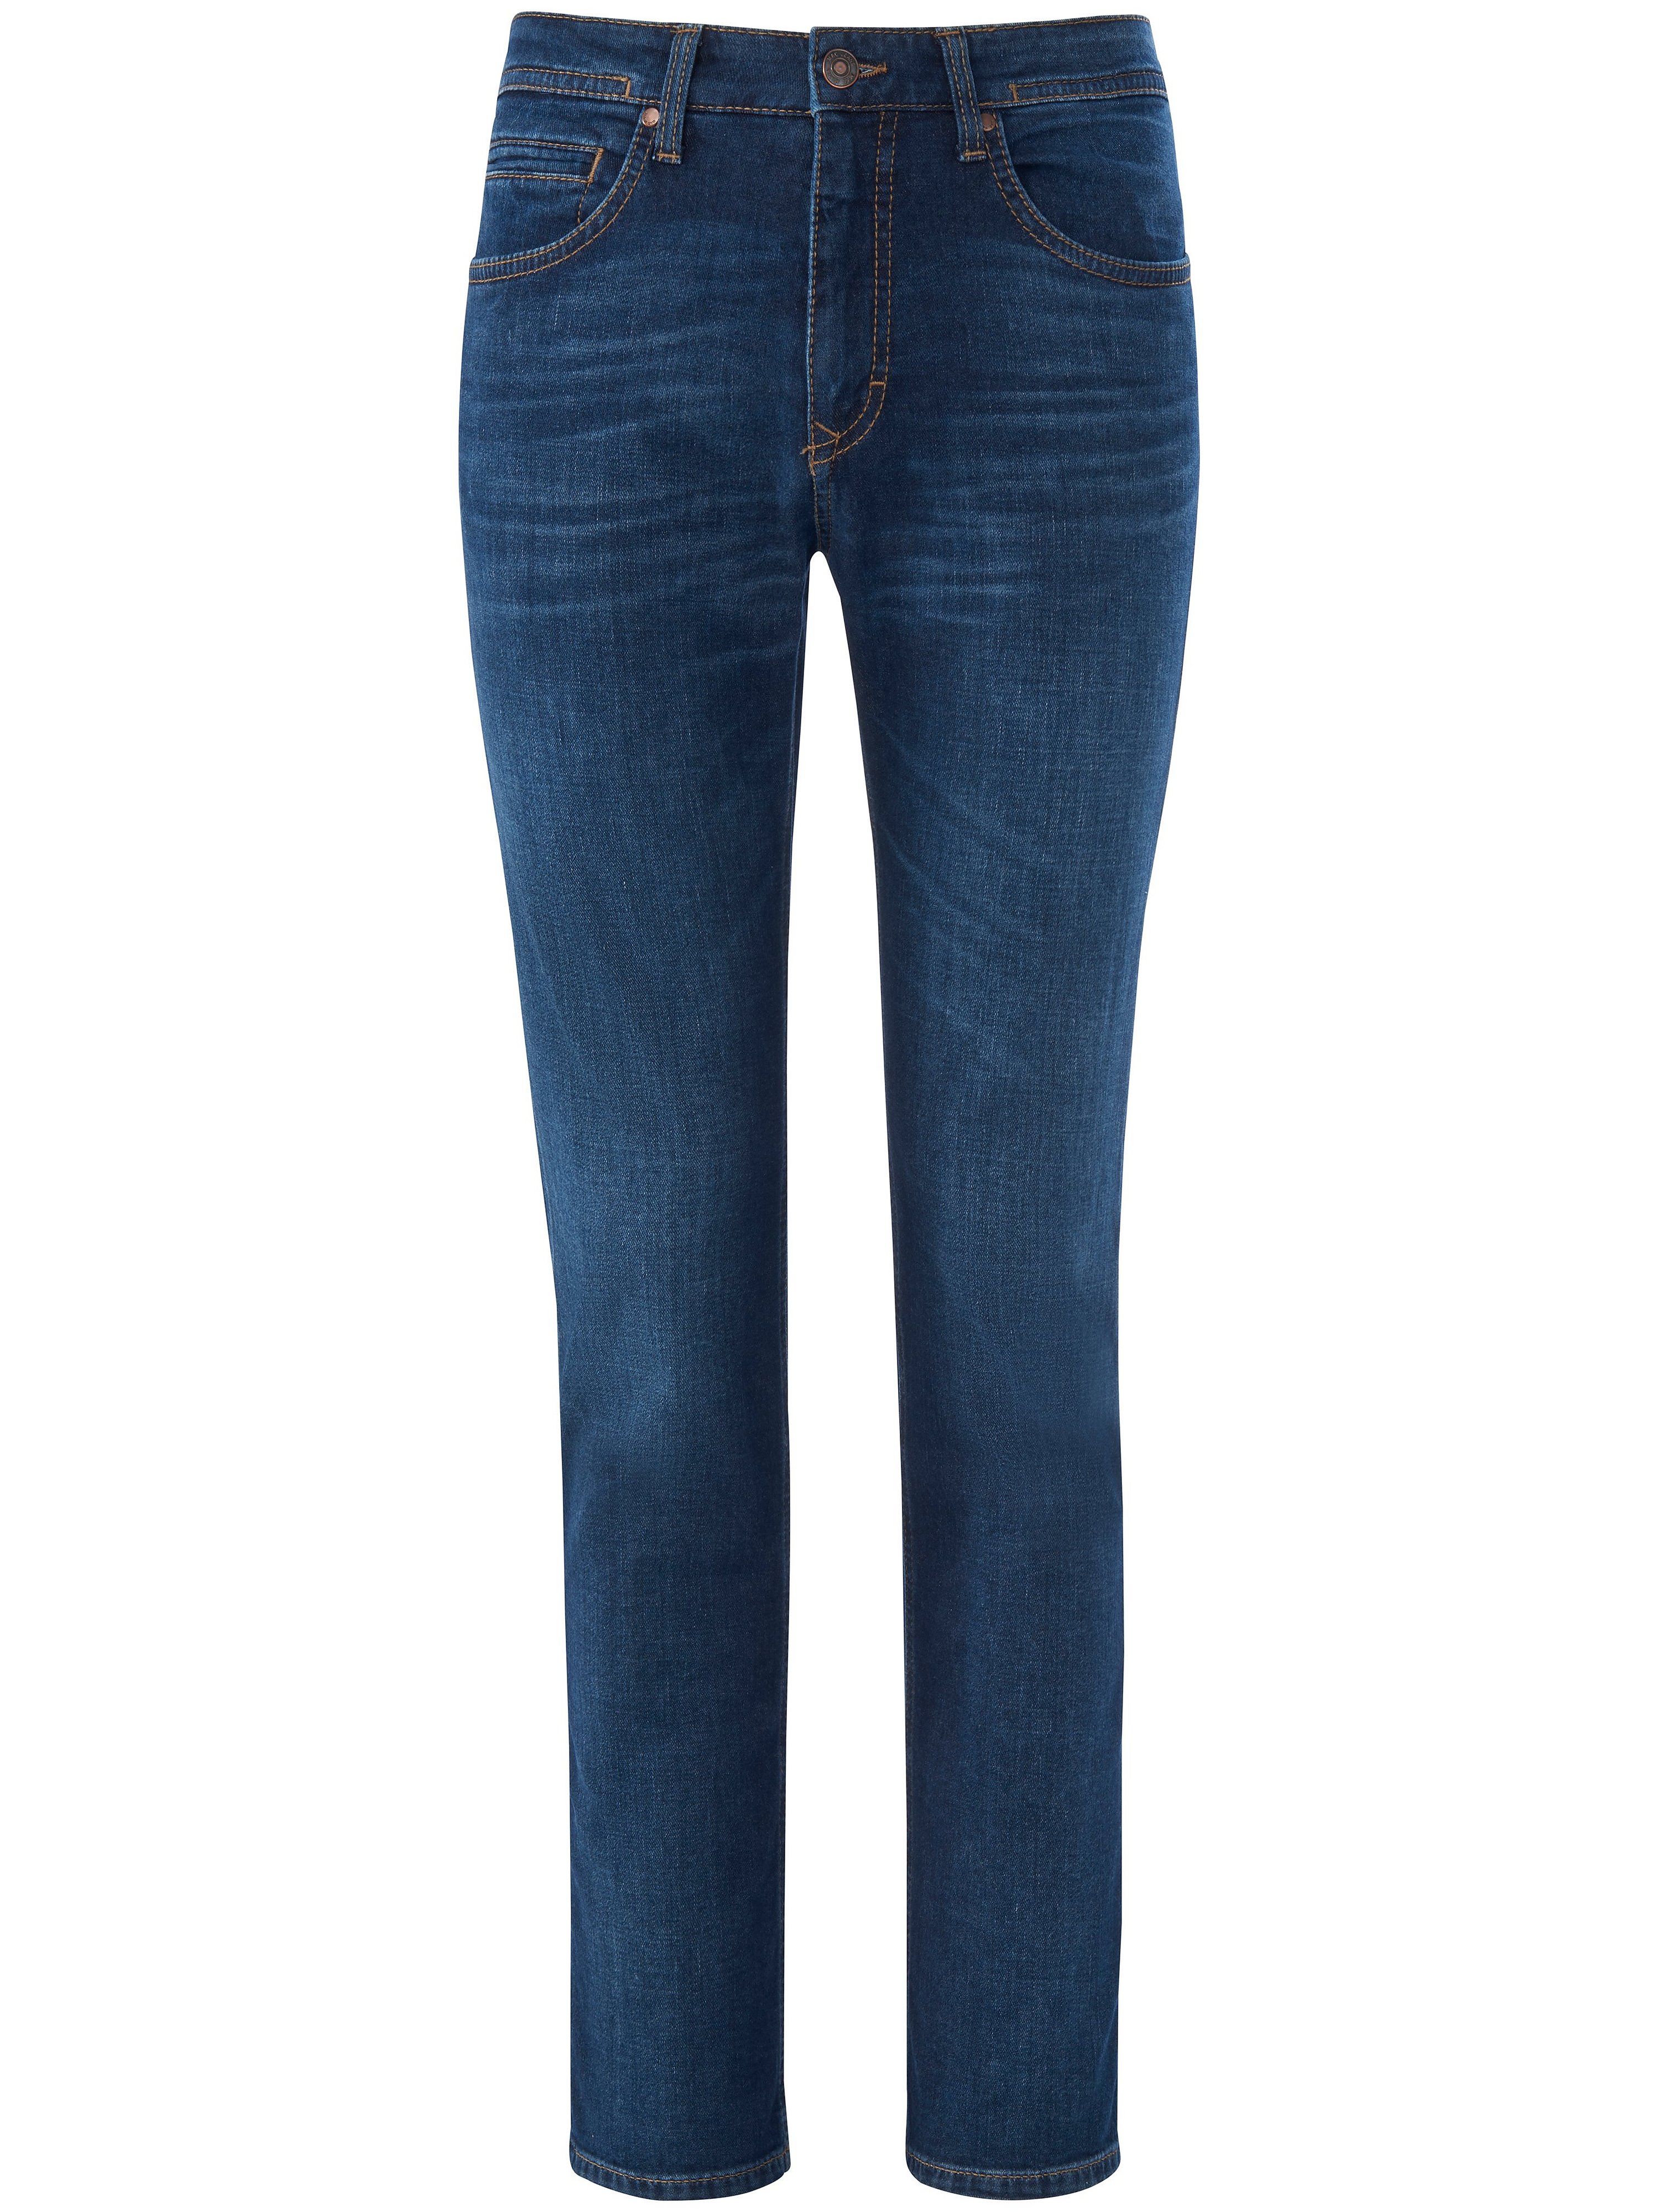 Jeans model Arne Pipe Regular Fit Van Mac denim